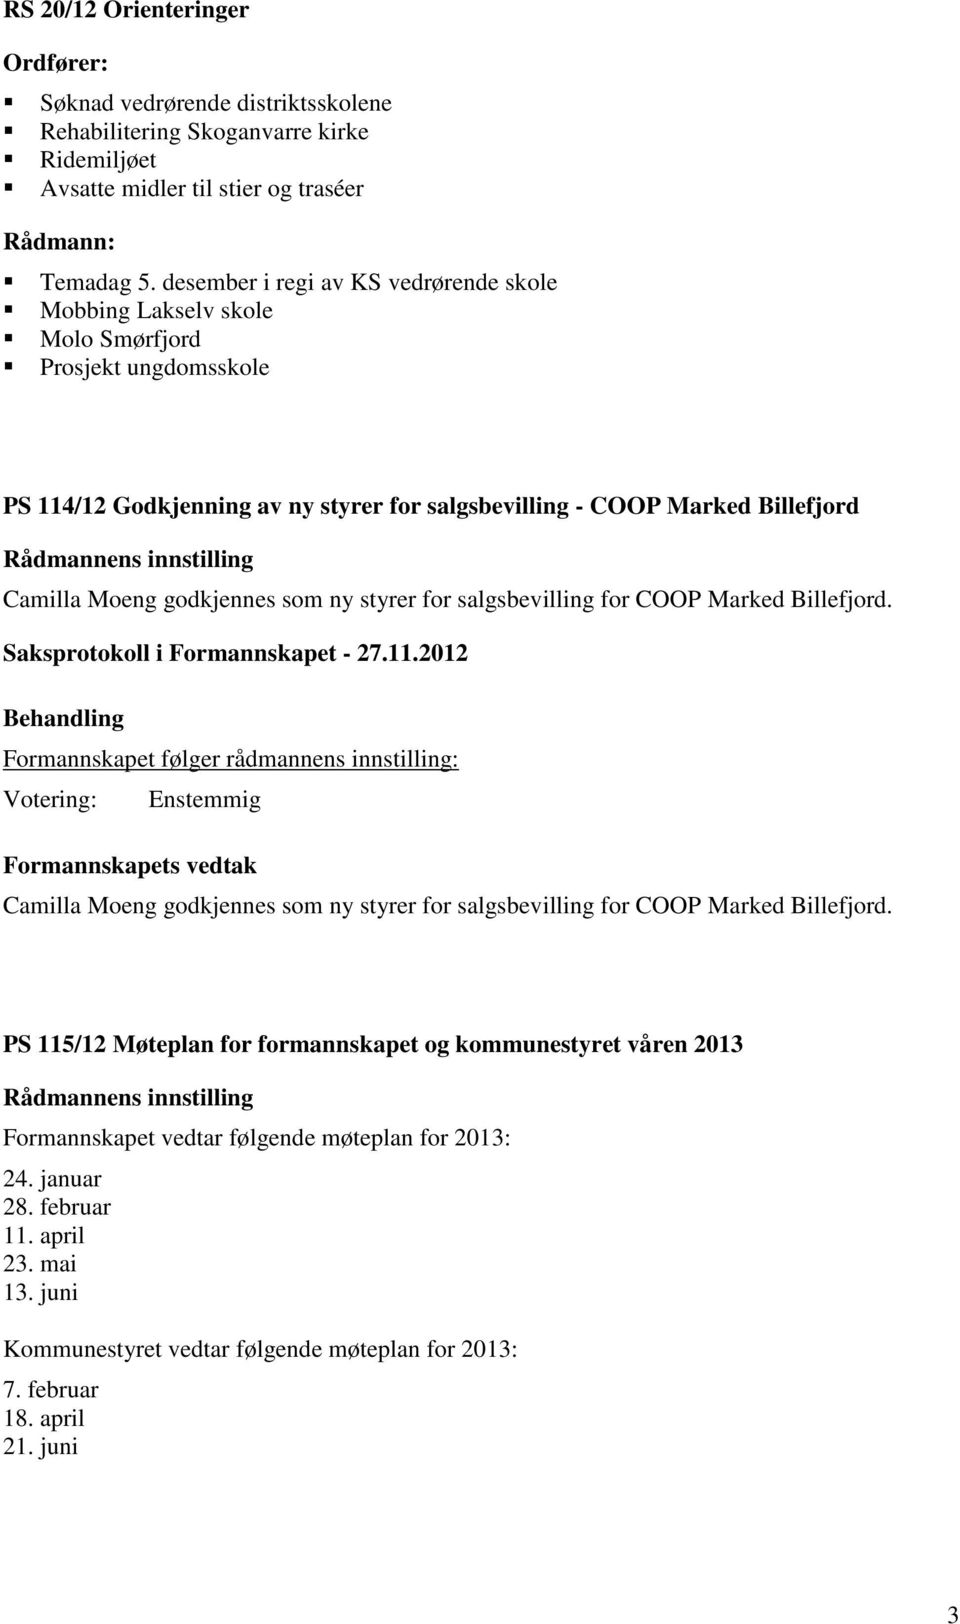 Camilla Moeng godkjennes som ny styrer for salgsbevilling for COOP Marked Billefjord.